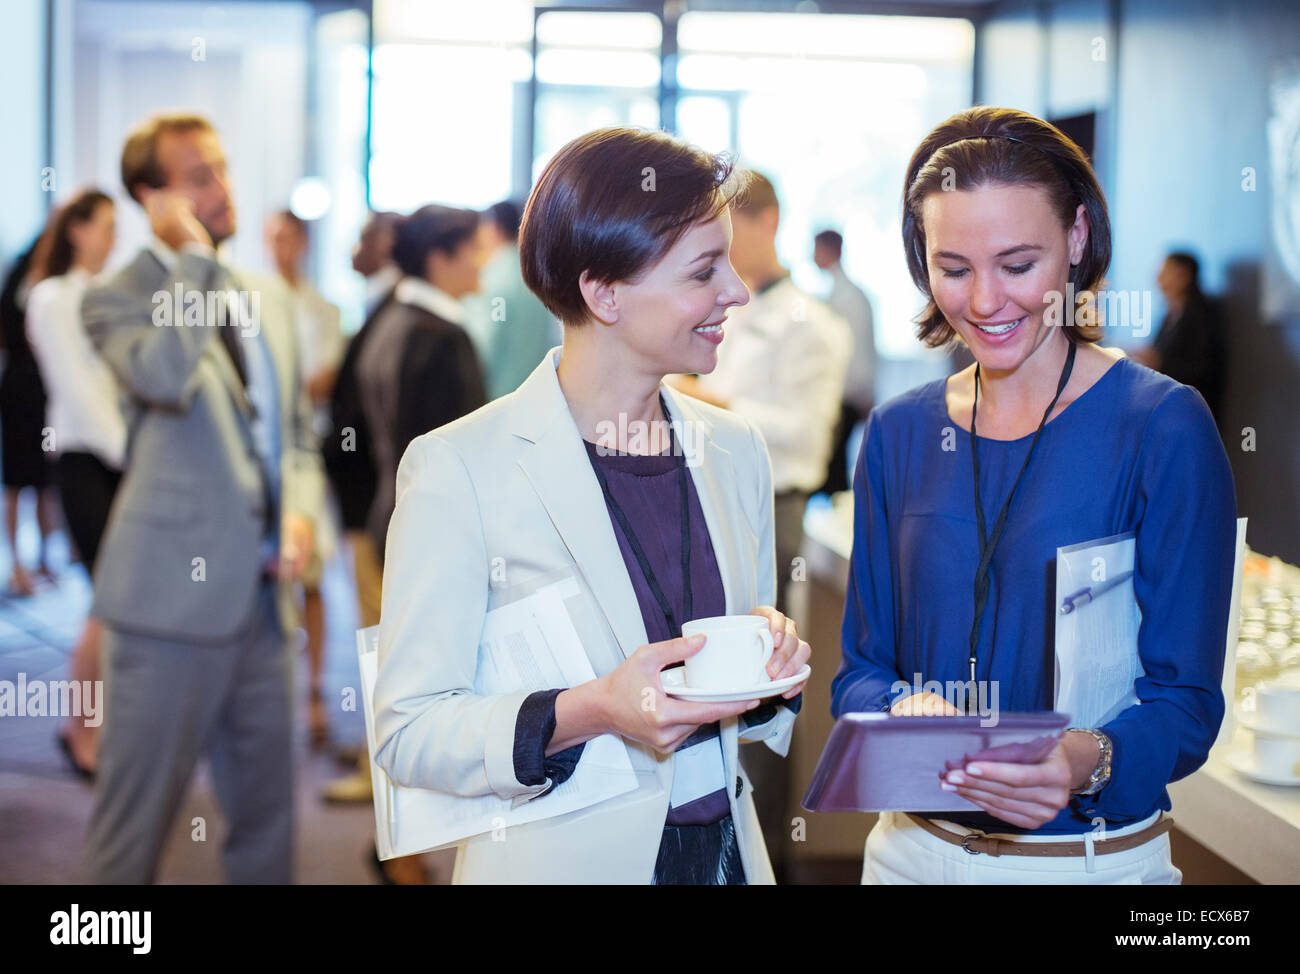 Ritratto di due donne sorridenti, parlando nella lobby del conference center durante la pausa caffè Foto Stock